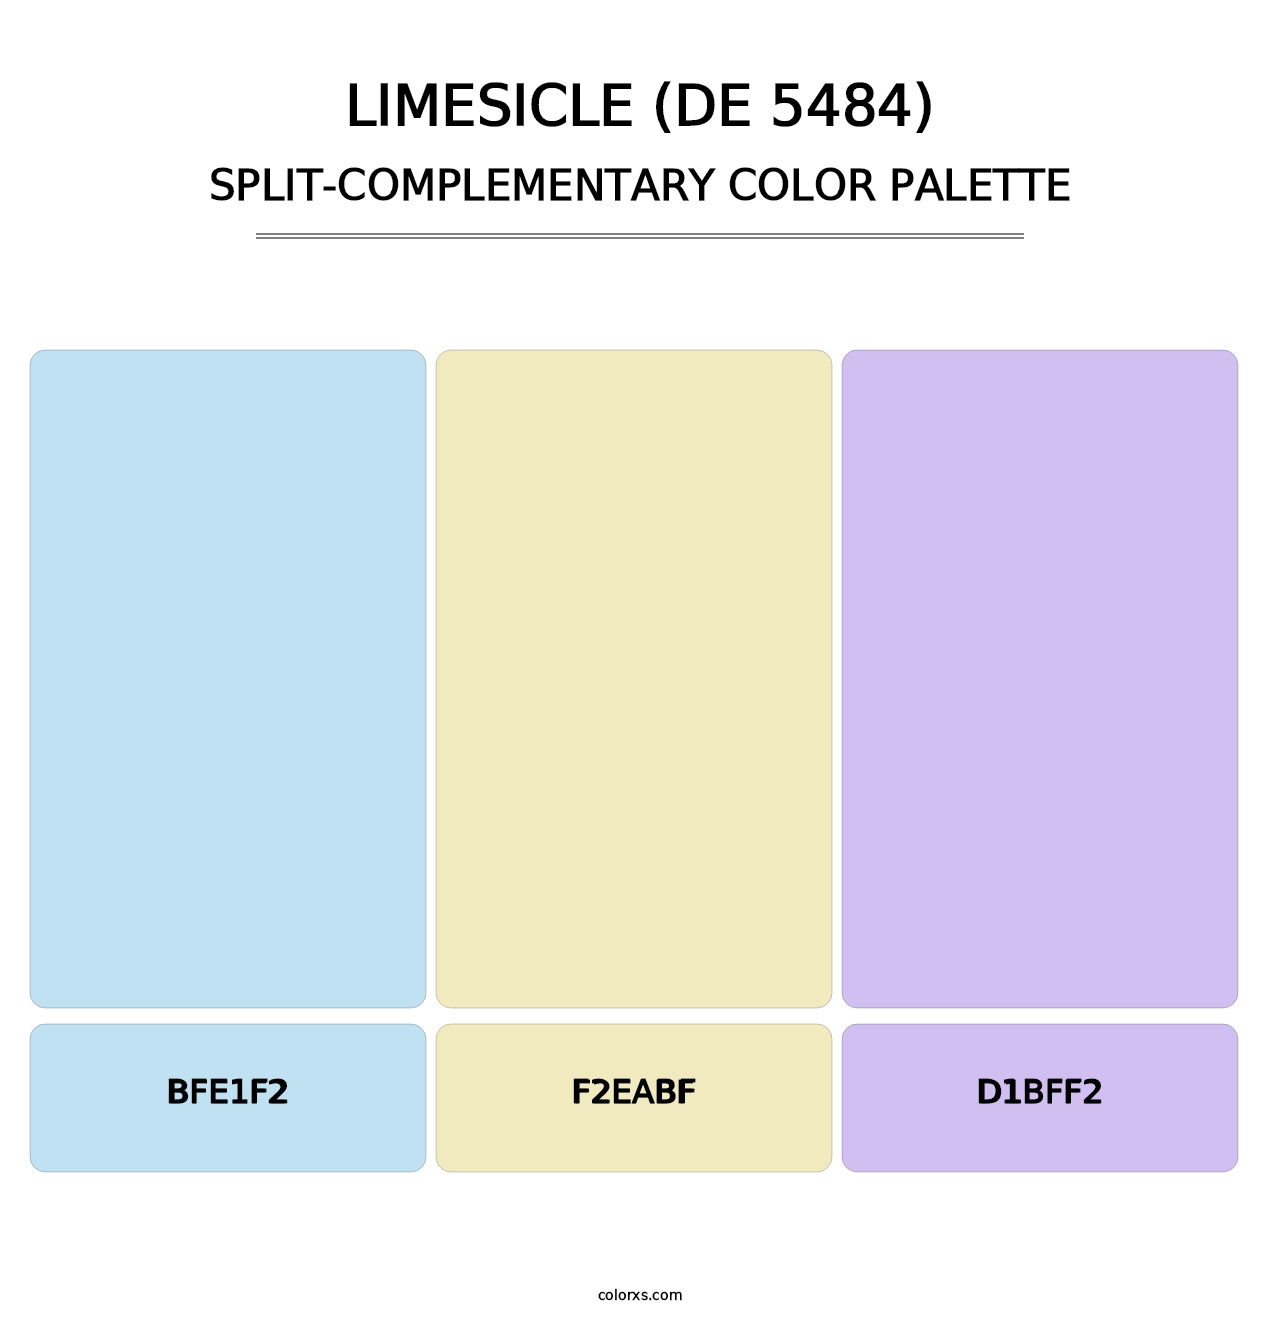 Limesicle (DE 5484) - Split-Complementary Color Palette